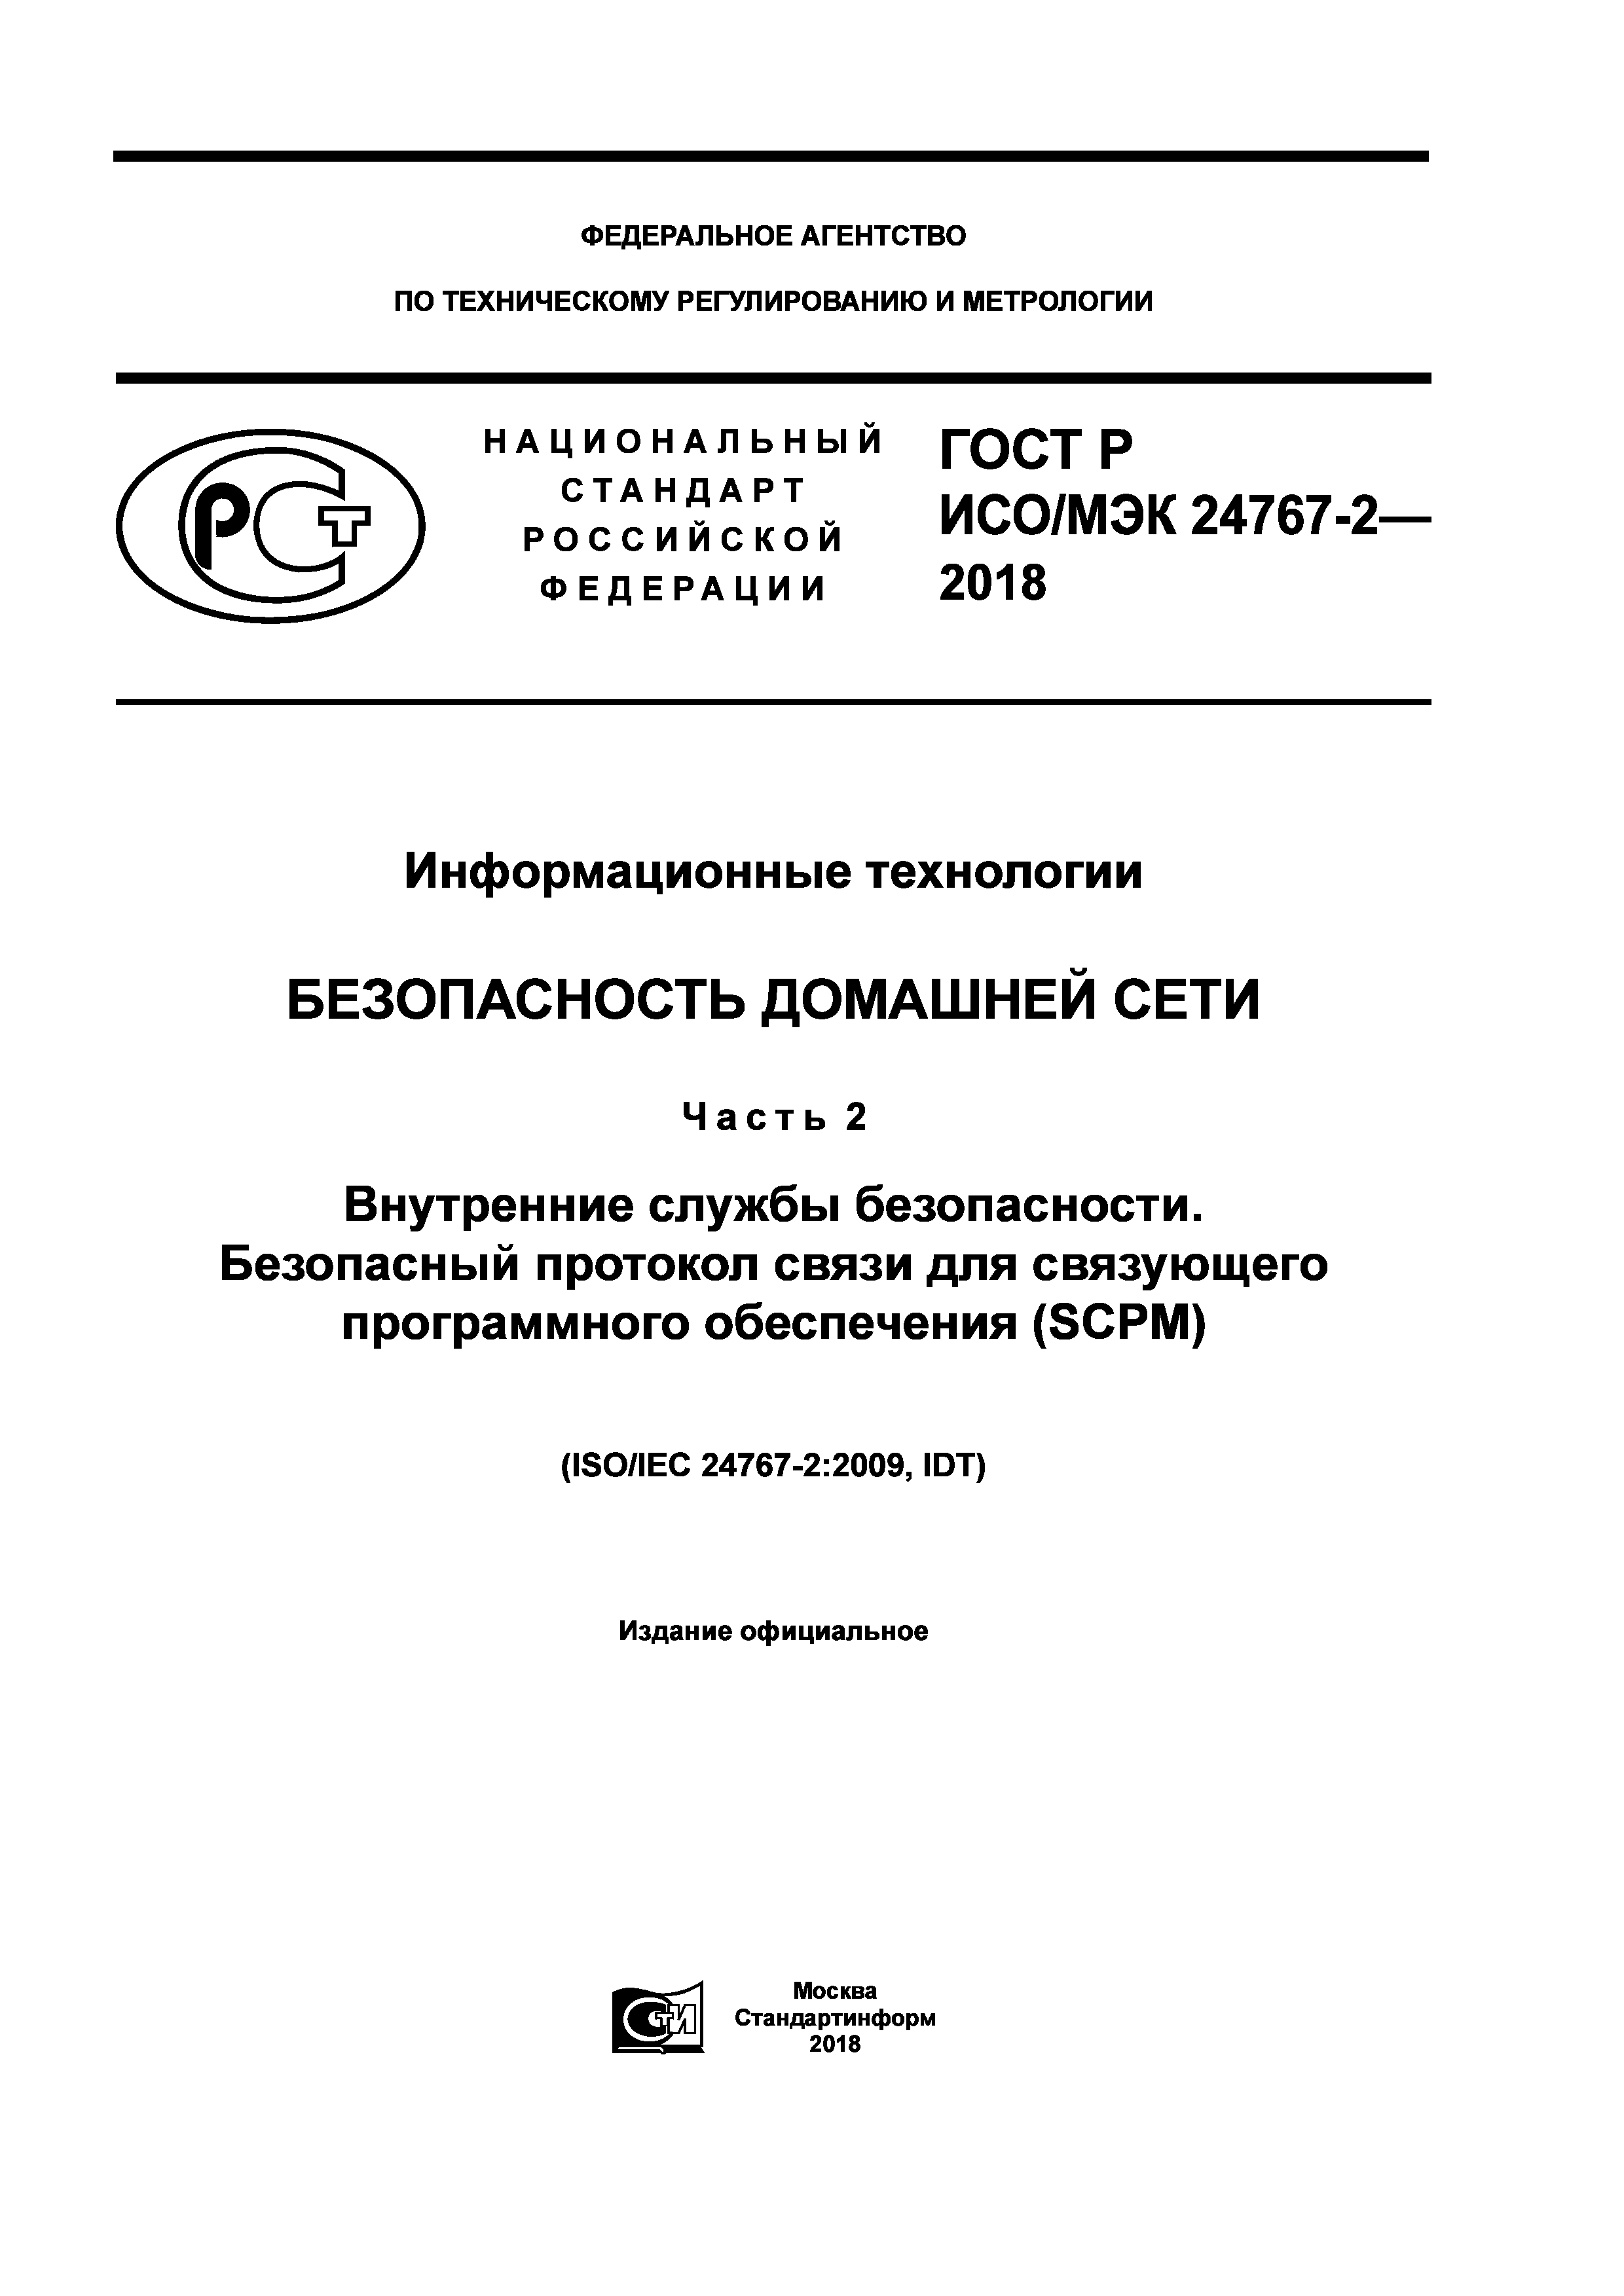 ГОСТ Р ИСО/МЭК 24767-2-2018